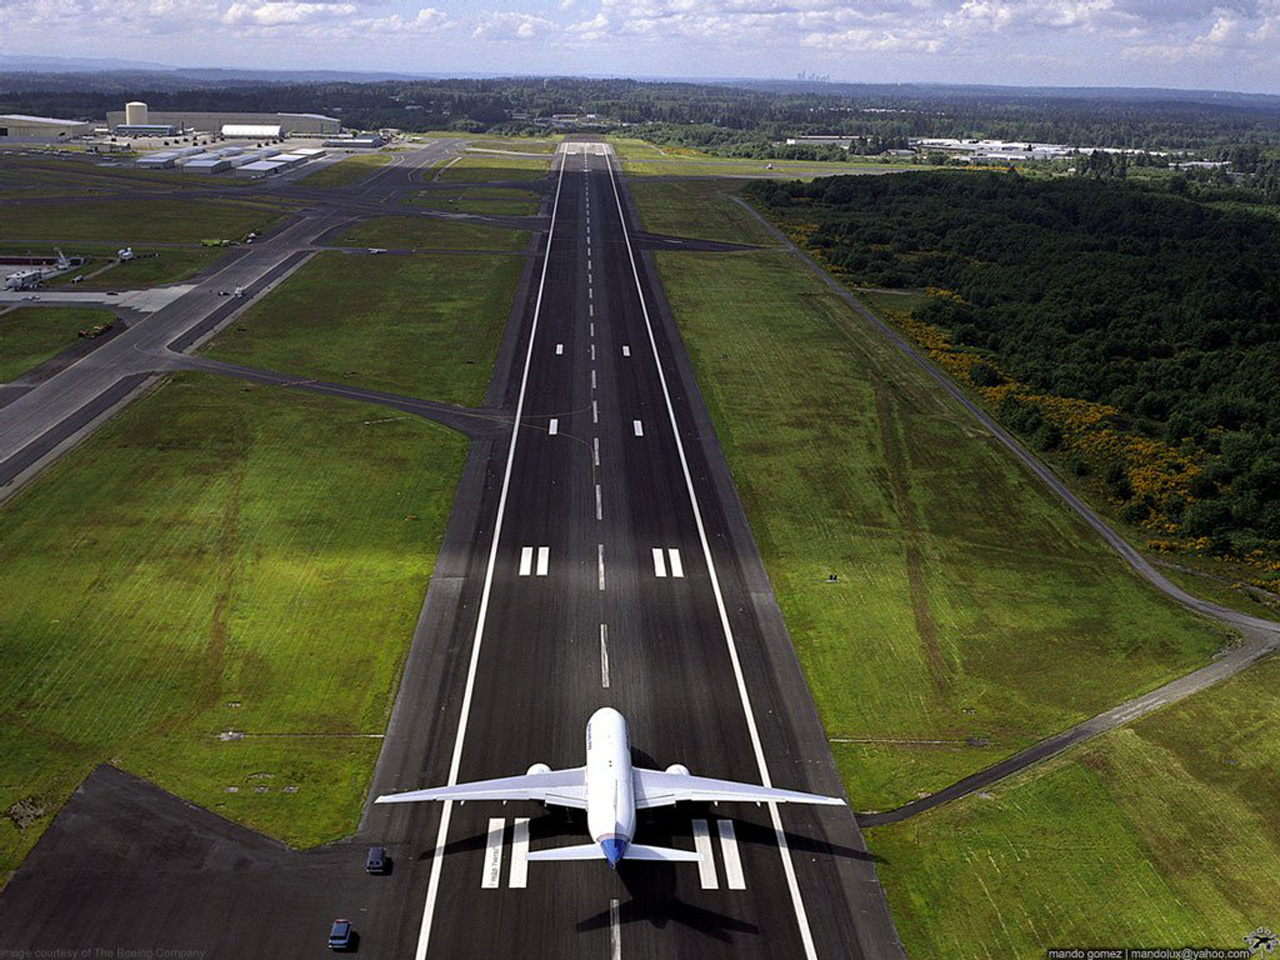 Governo arrecada R$ 2,377 bilhões à vista com leilão de 12 aeroportos